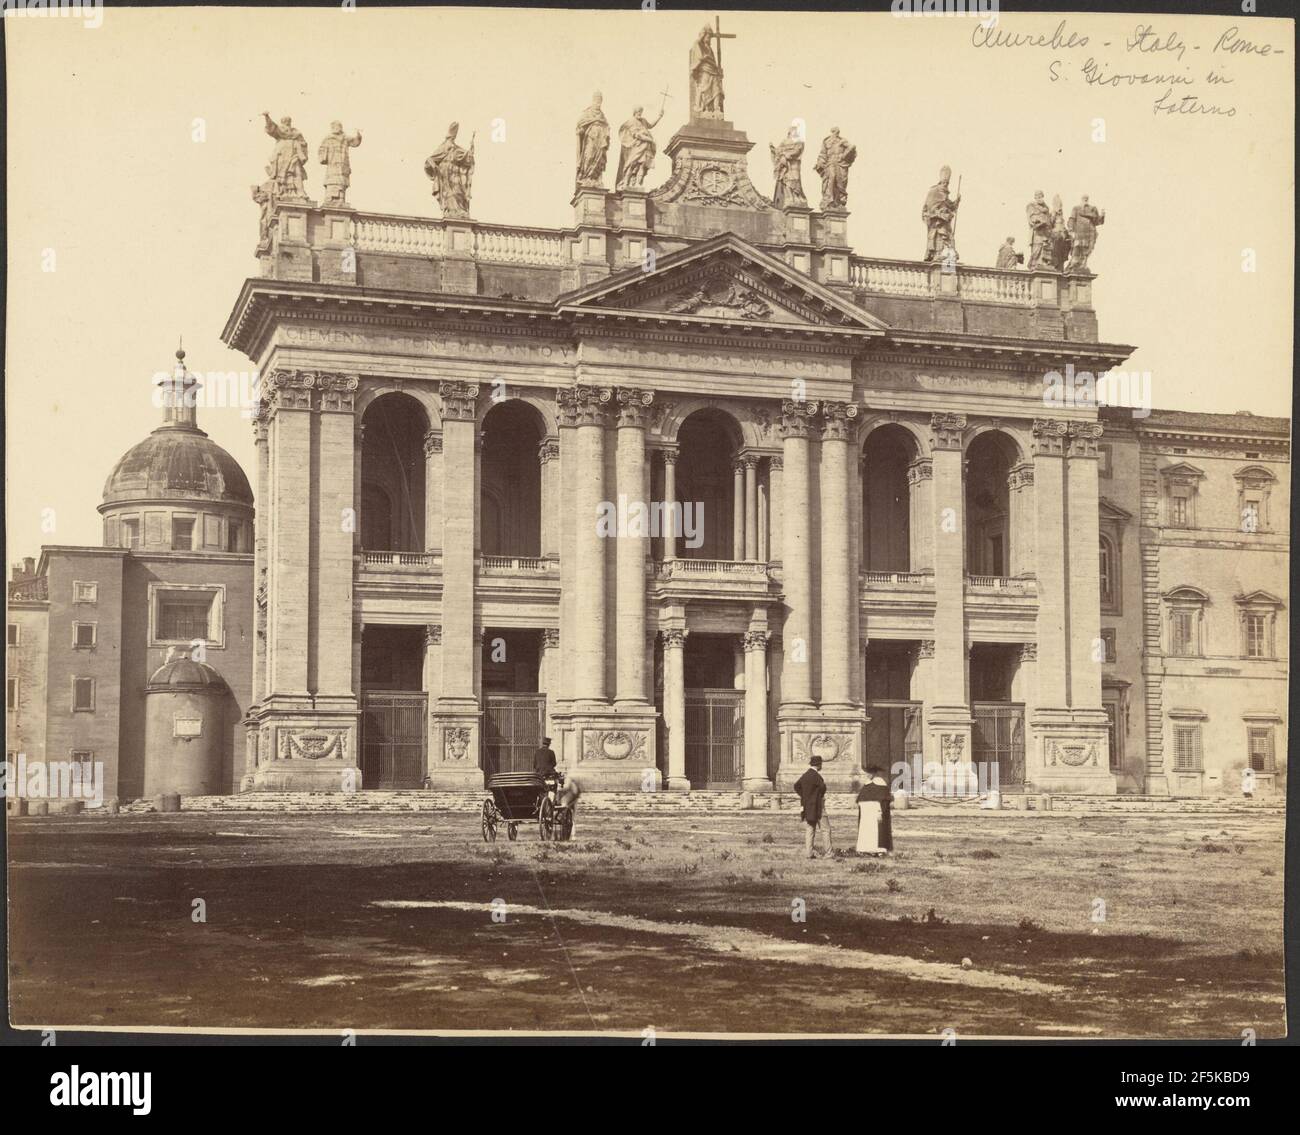 Façade of the Basilica of San Giovanni in Laterano, Rome. Gioacchino Altobelli (Italian, 1814 - about 1879) Stock Photo